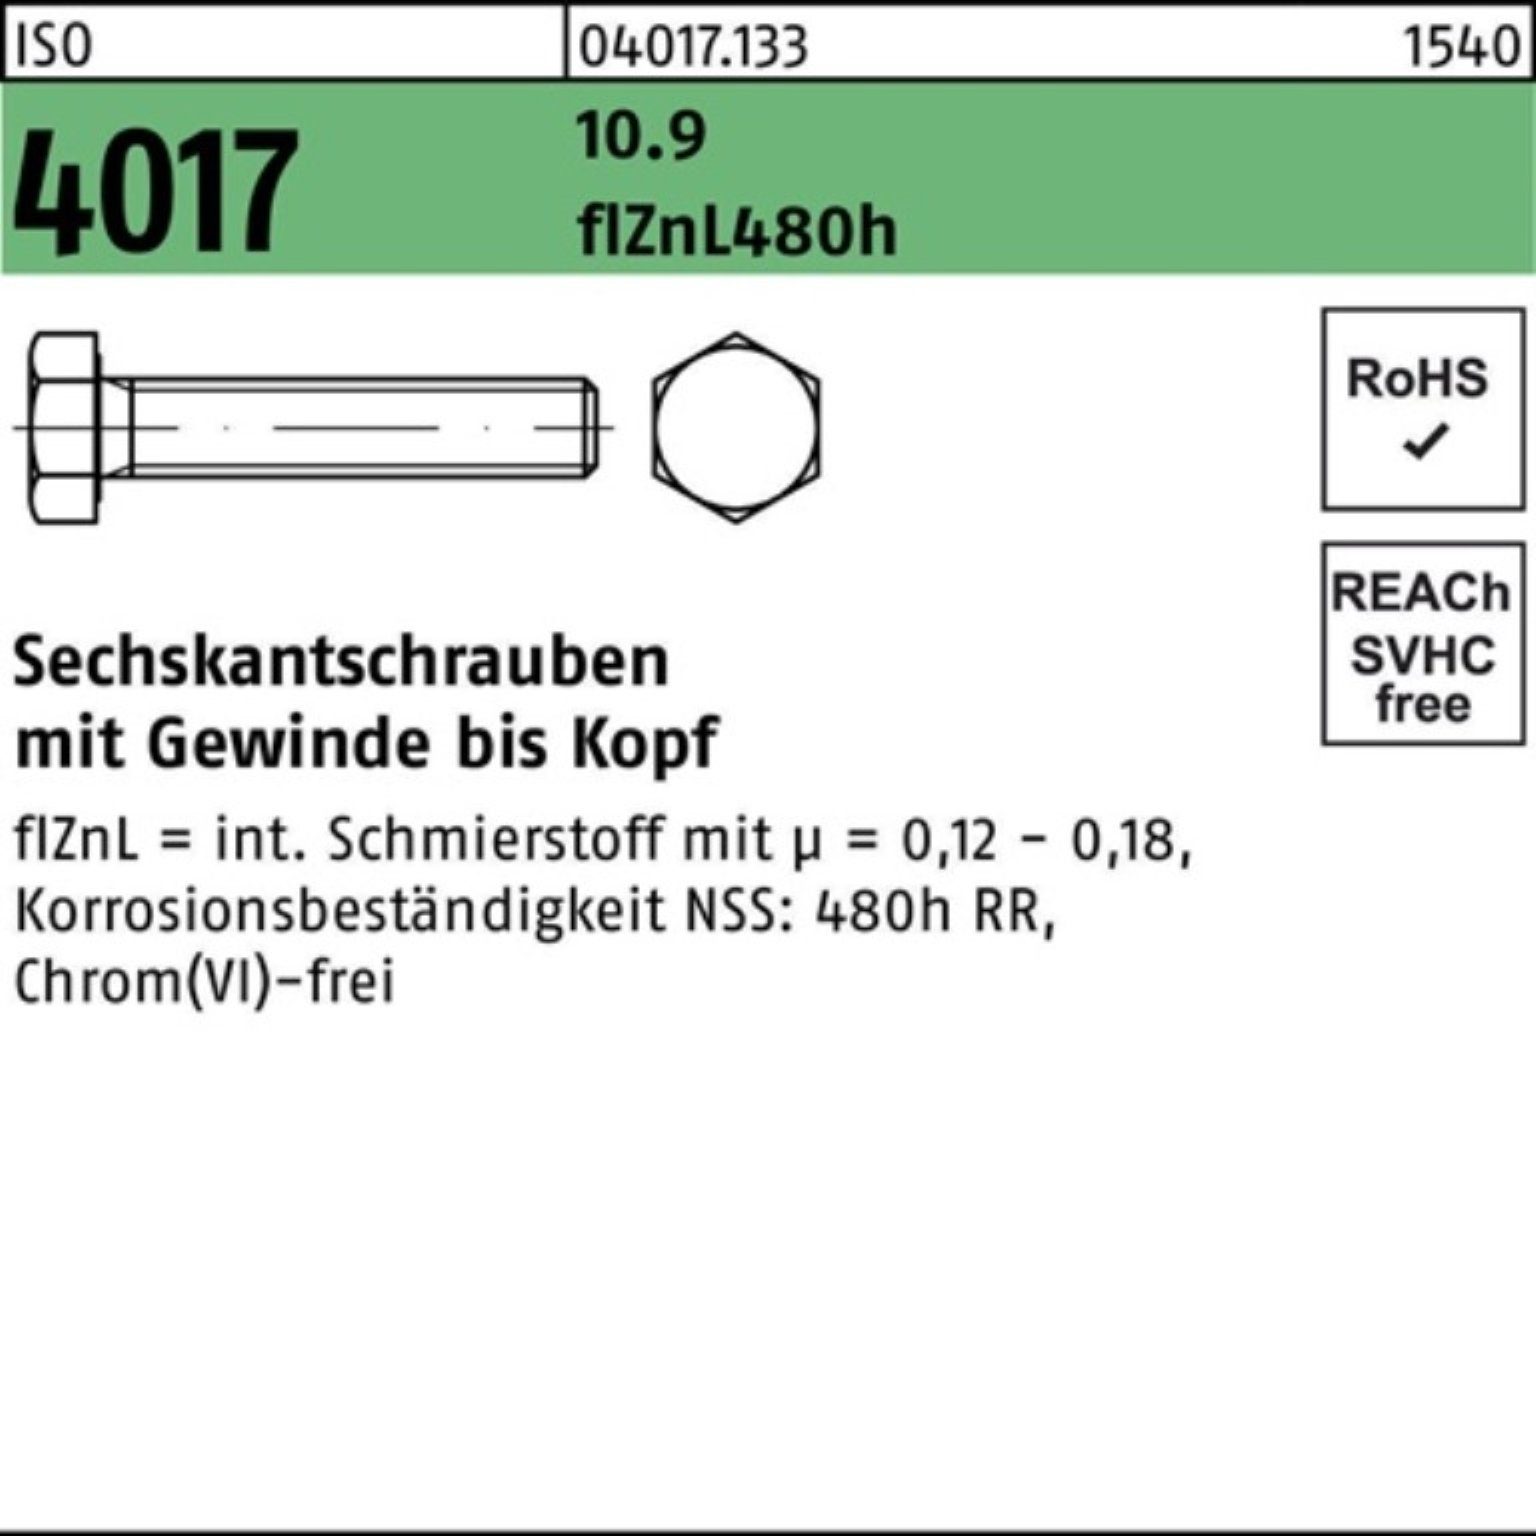 Bufab Sechskantschraube VG M12x 10.9 ISO Sechskantschraube Pack 4017 100er 110 zinklamellenb